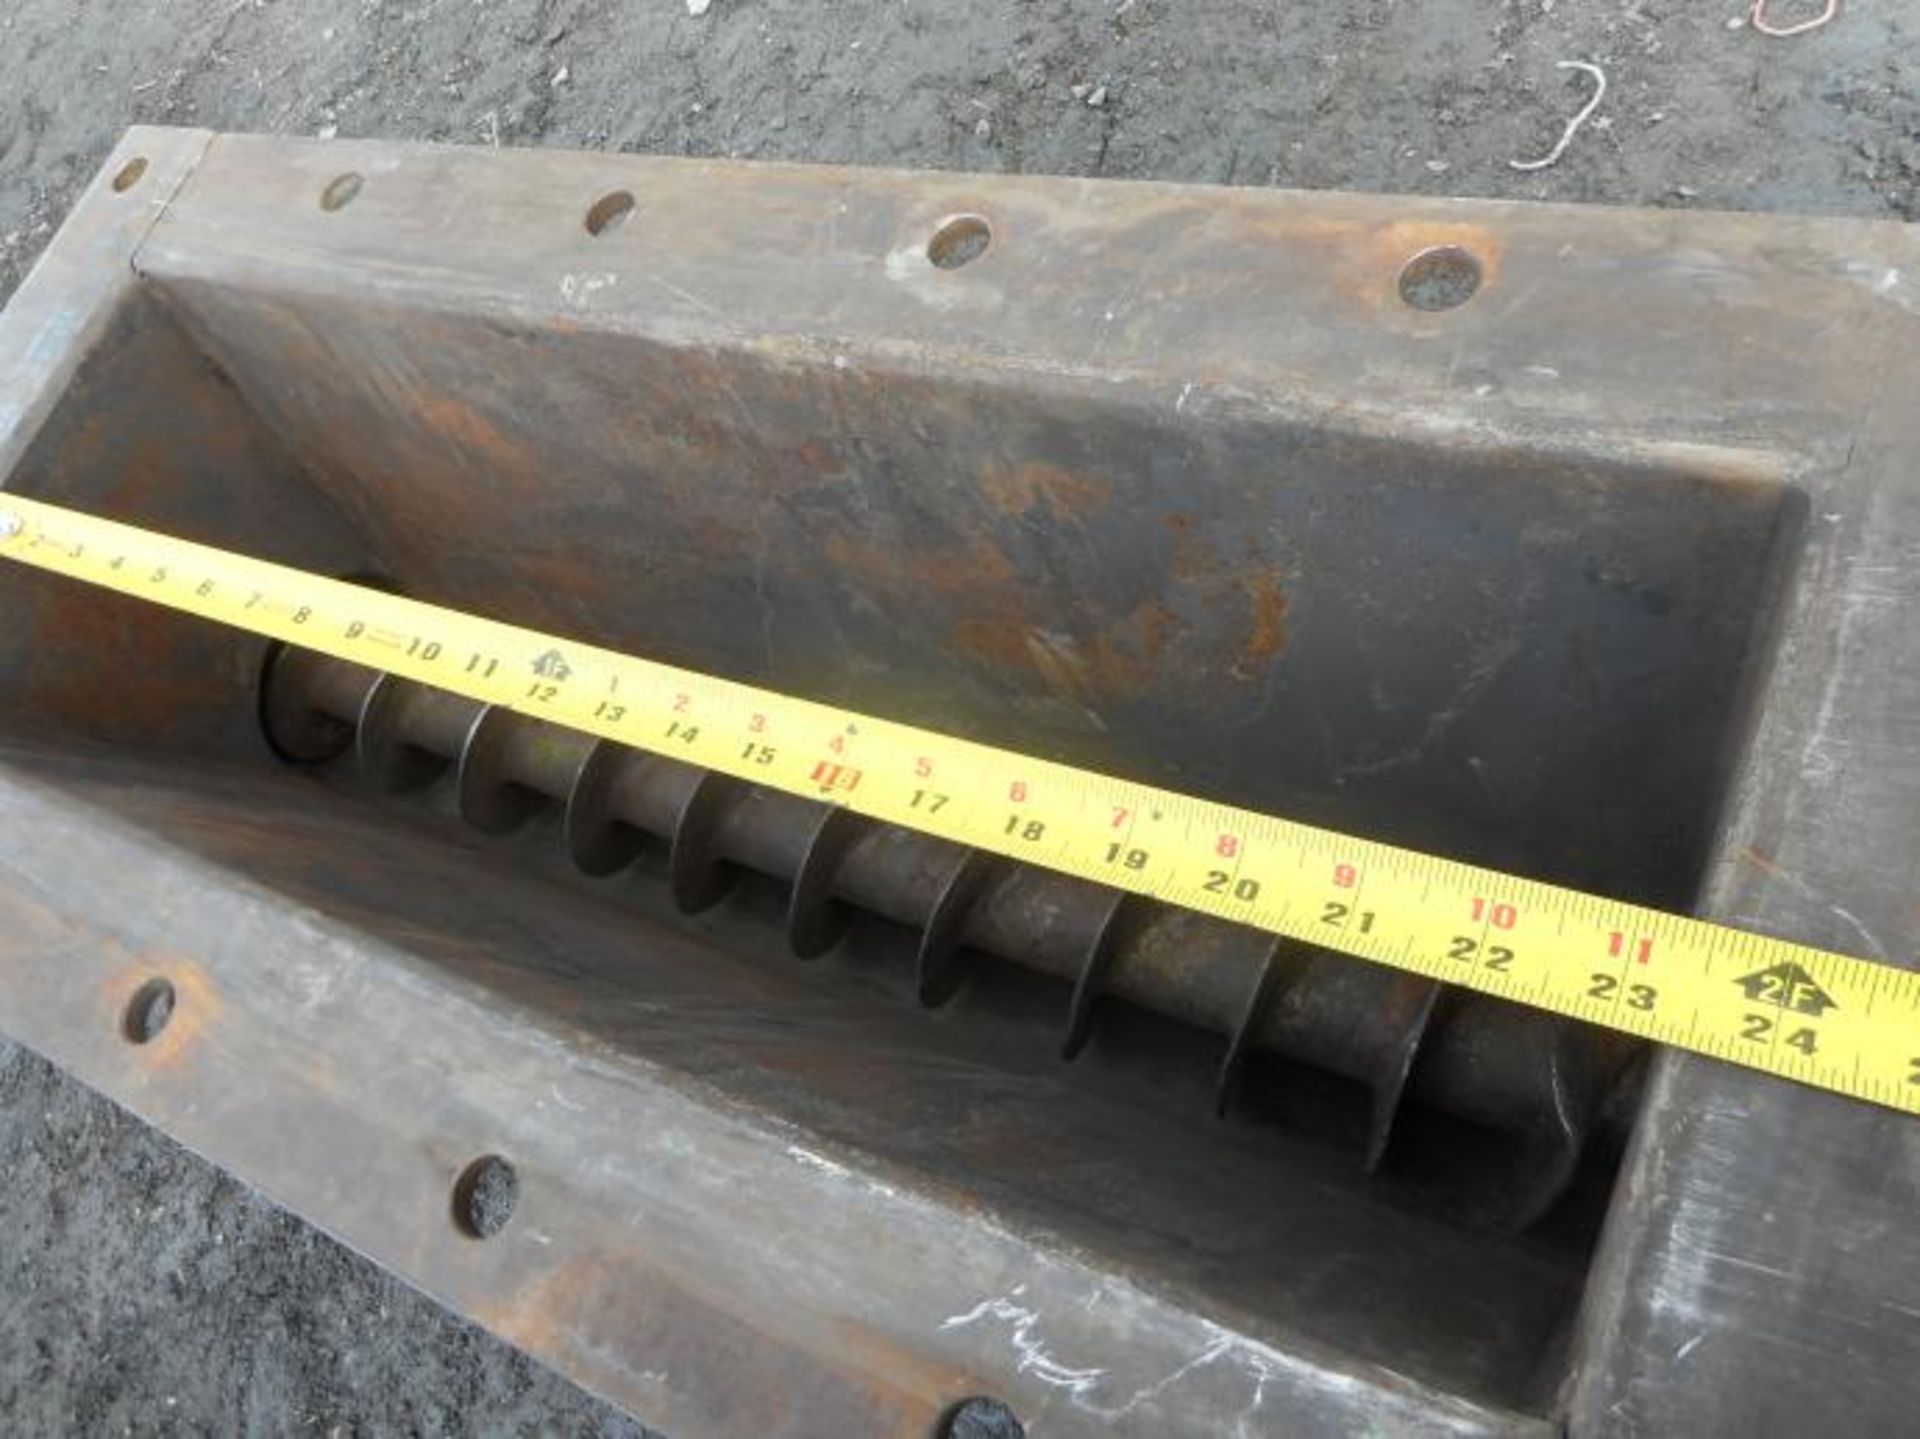 Stainless steel screw conveyor - Convoyeur vis en inox - Bild 6 aus 8